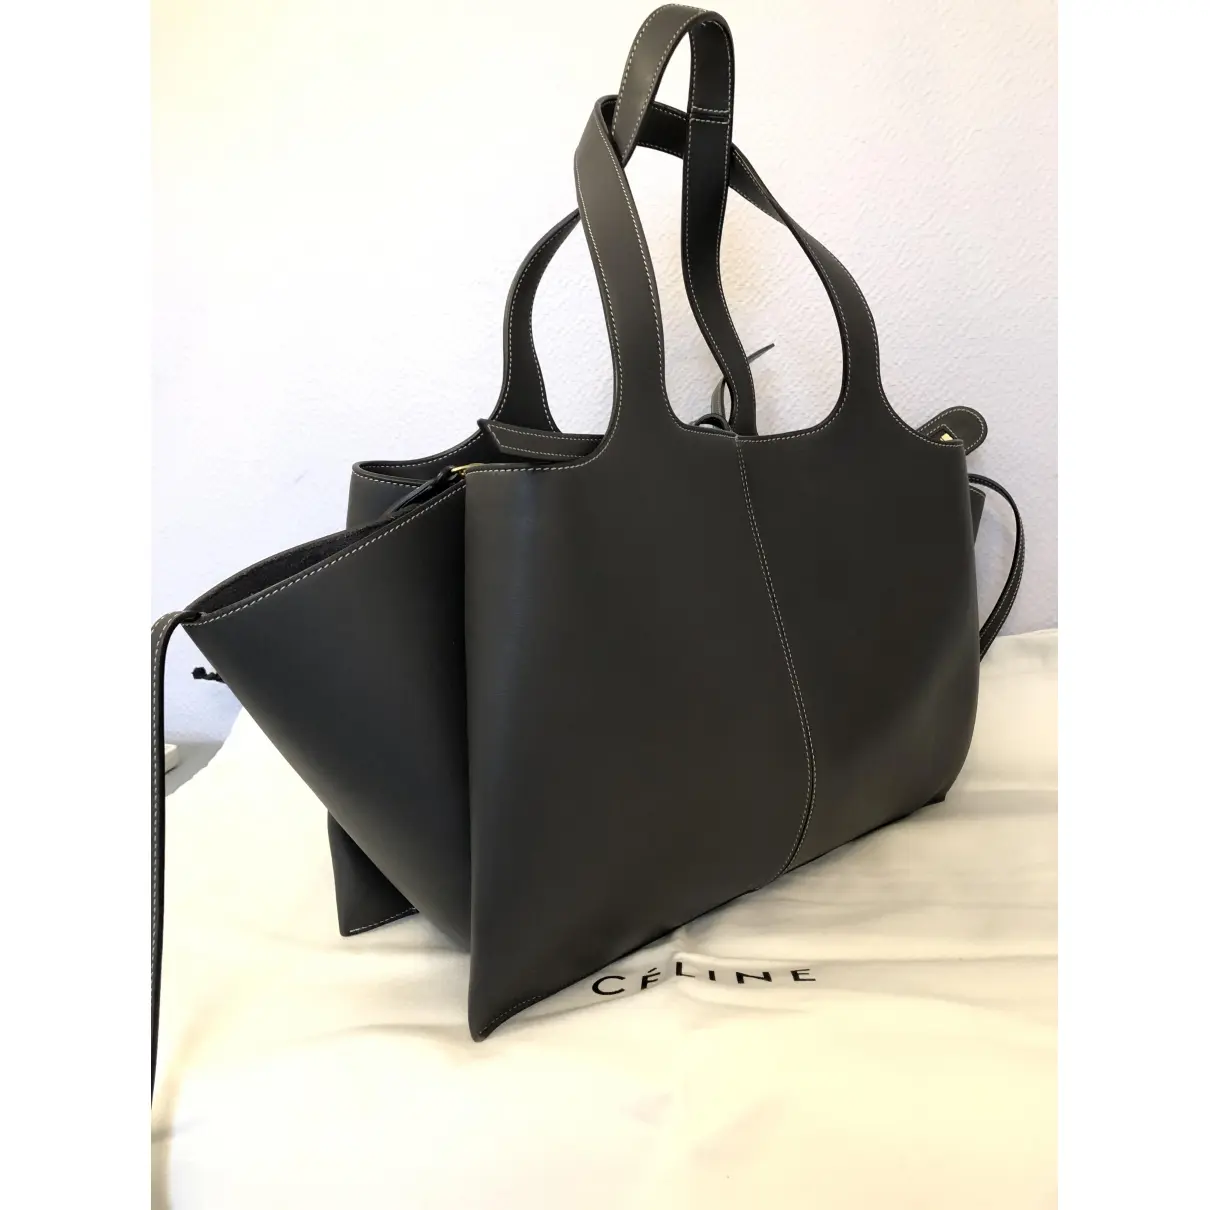 Celine Tri-Fold leather handbag for sale